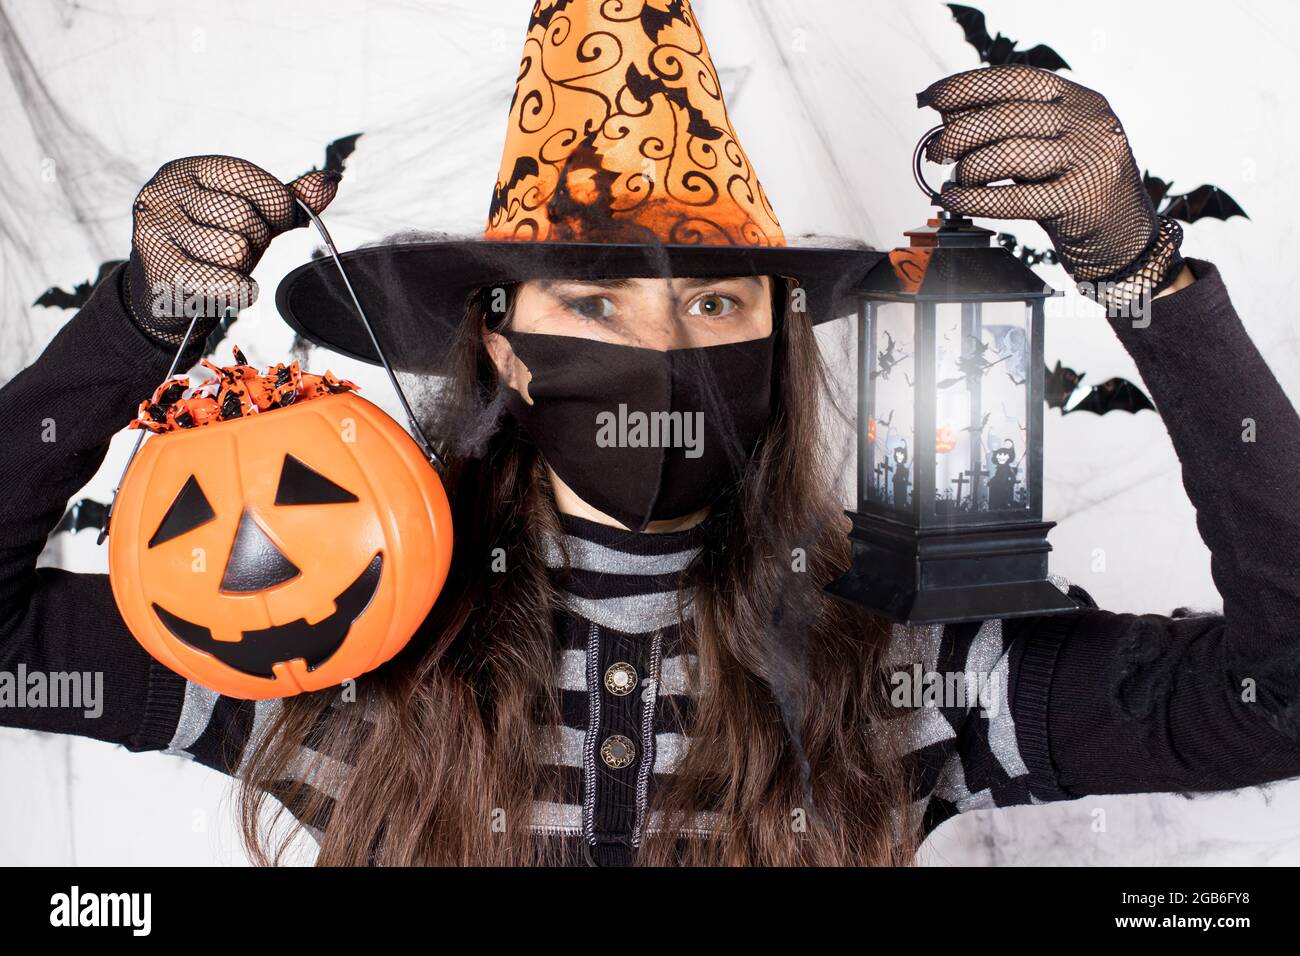 Halloween personnes masquées. Une femme en costume de sorcière dans un masque de protection tient une citrouille avec des bonbons et une lanterne lumineuse. Au cours du cycle de coronavirus Banque D'Images